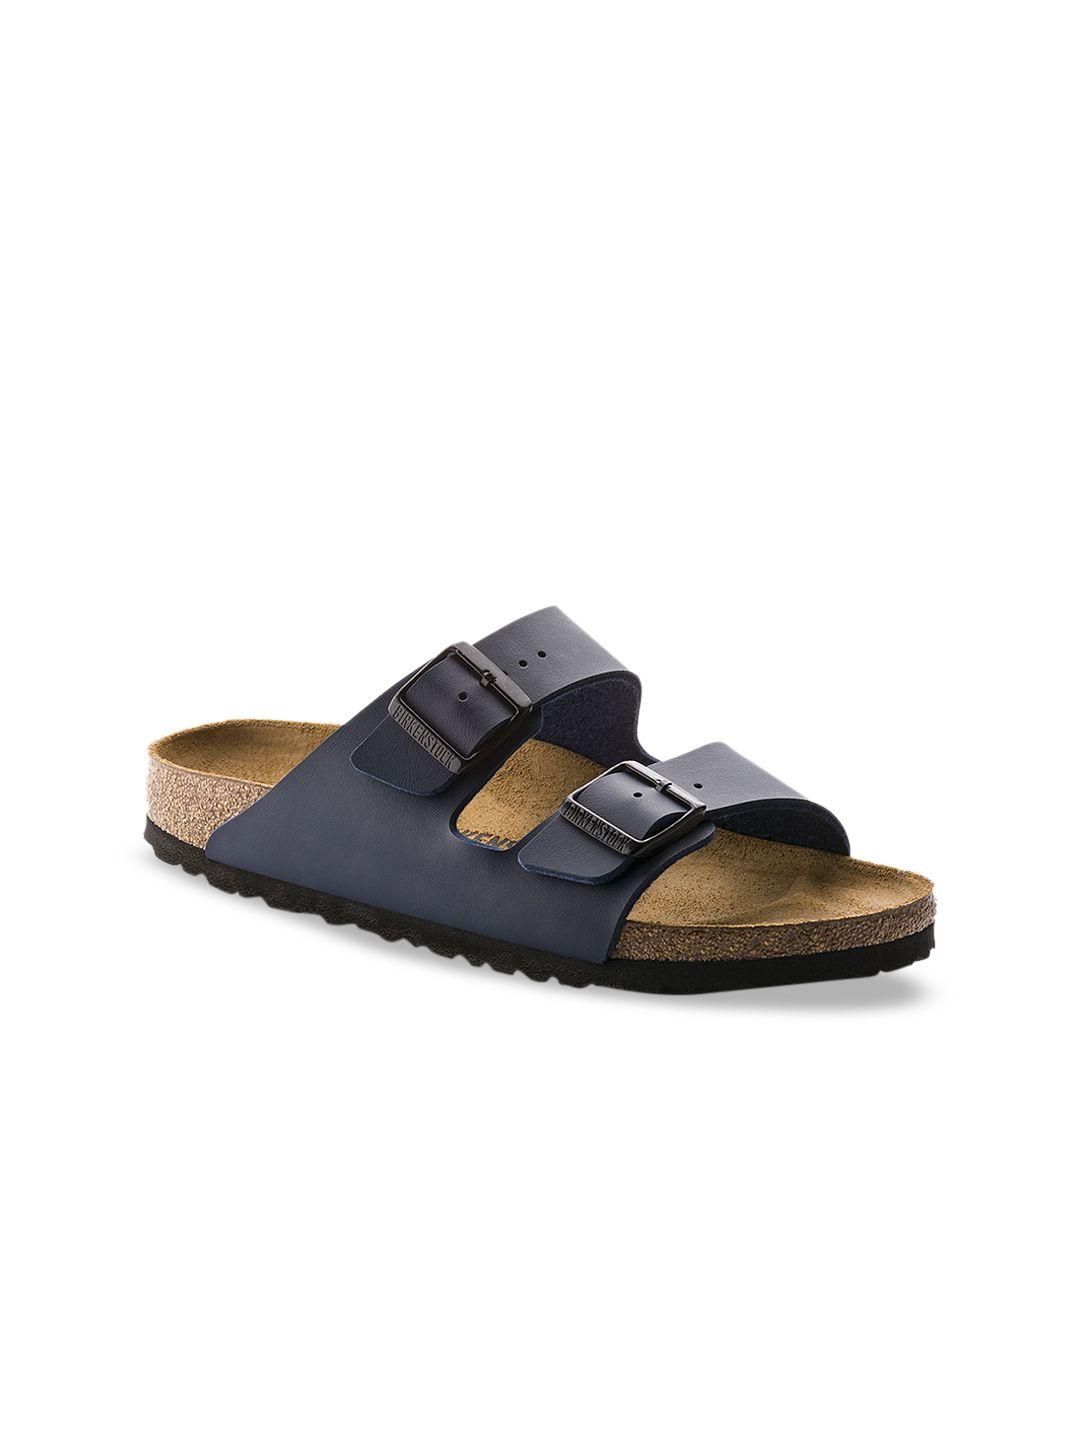 birkenstock unisex navy blue arizona birko-flor narrow width sandals